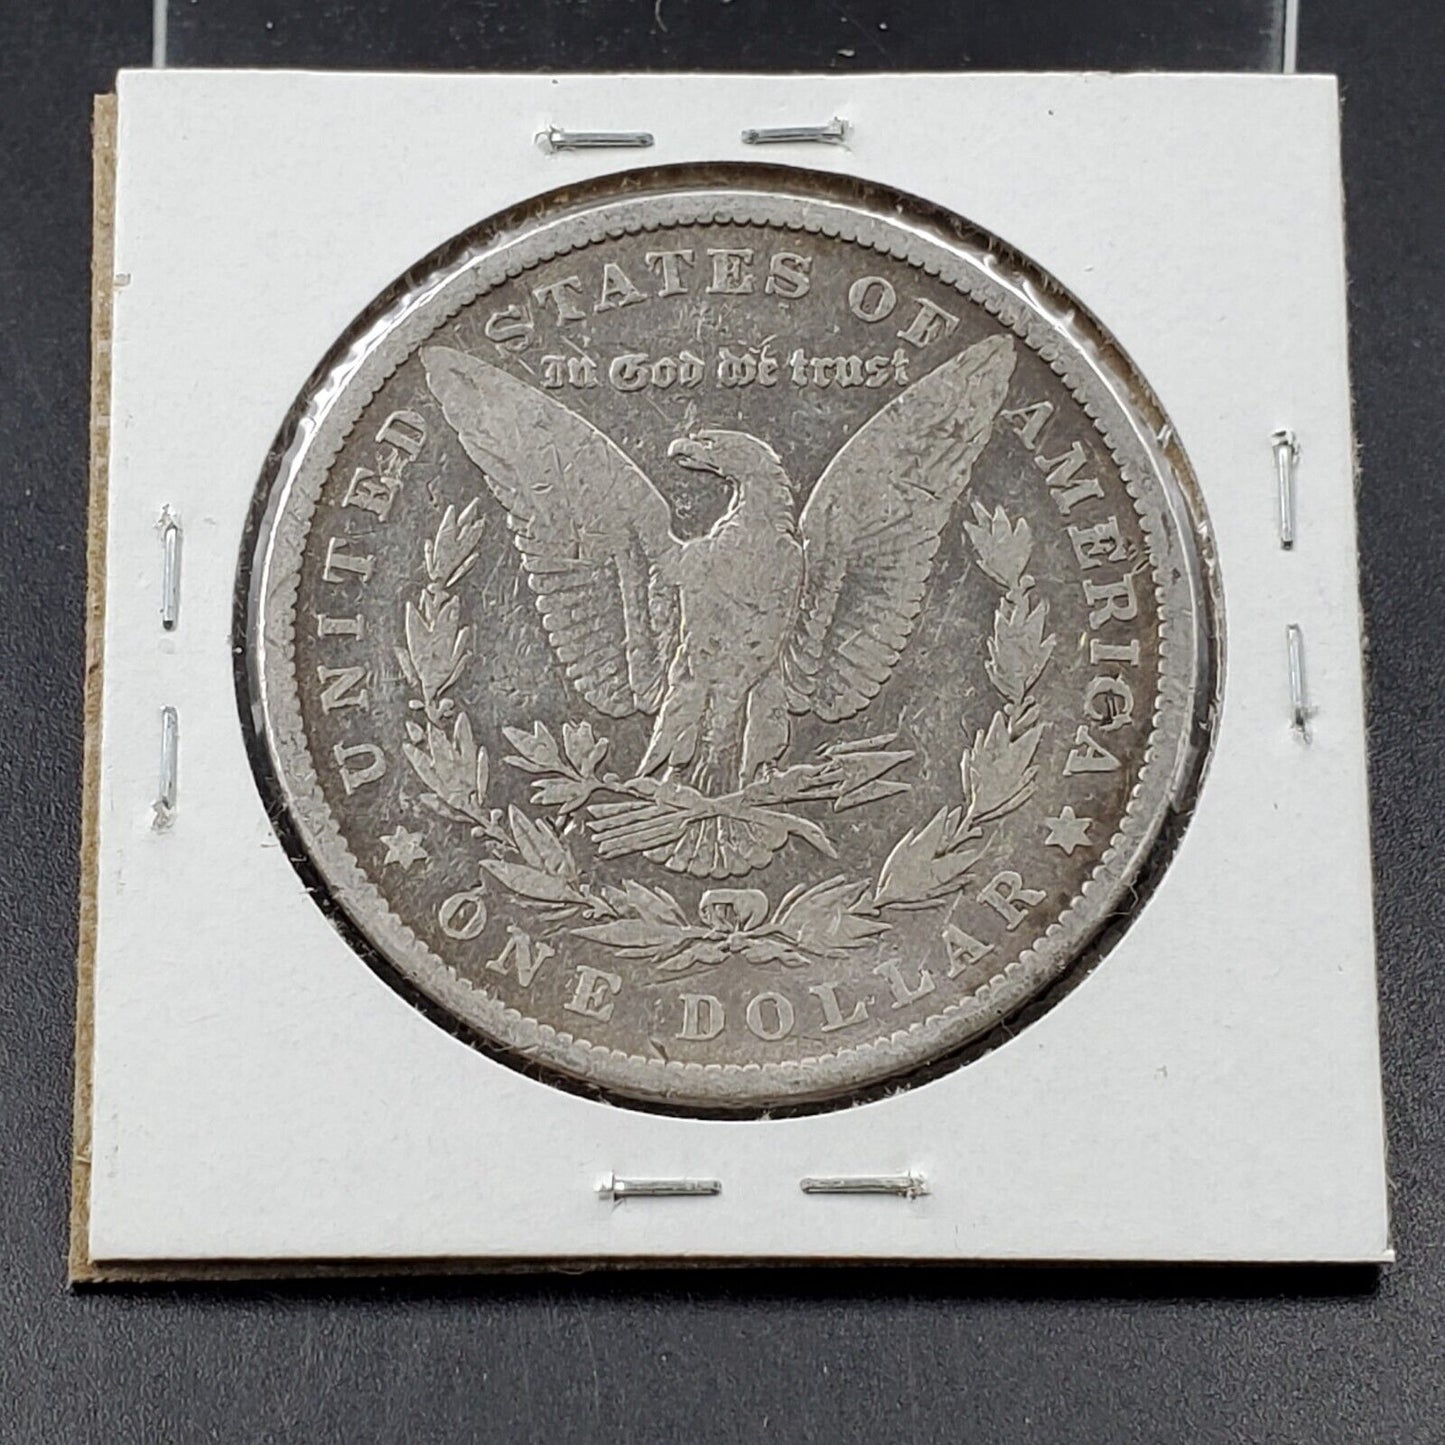 1879 P Morgan Silver Dollar Coin Fine / VF Very Fine Circulated